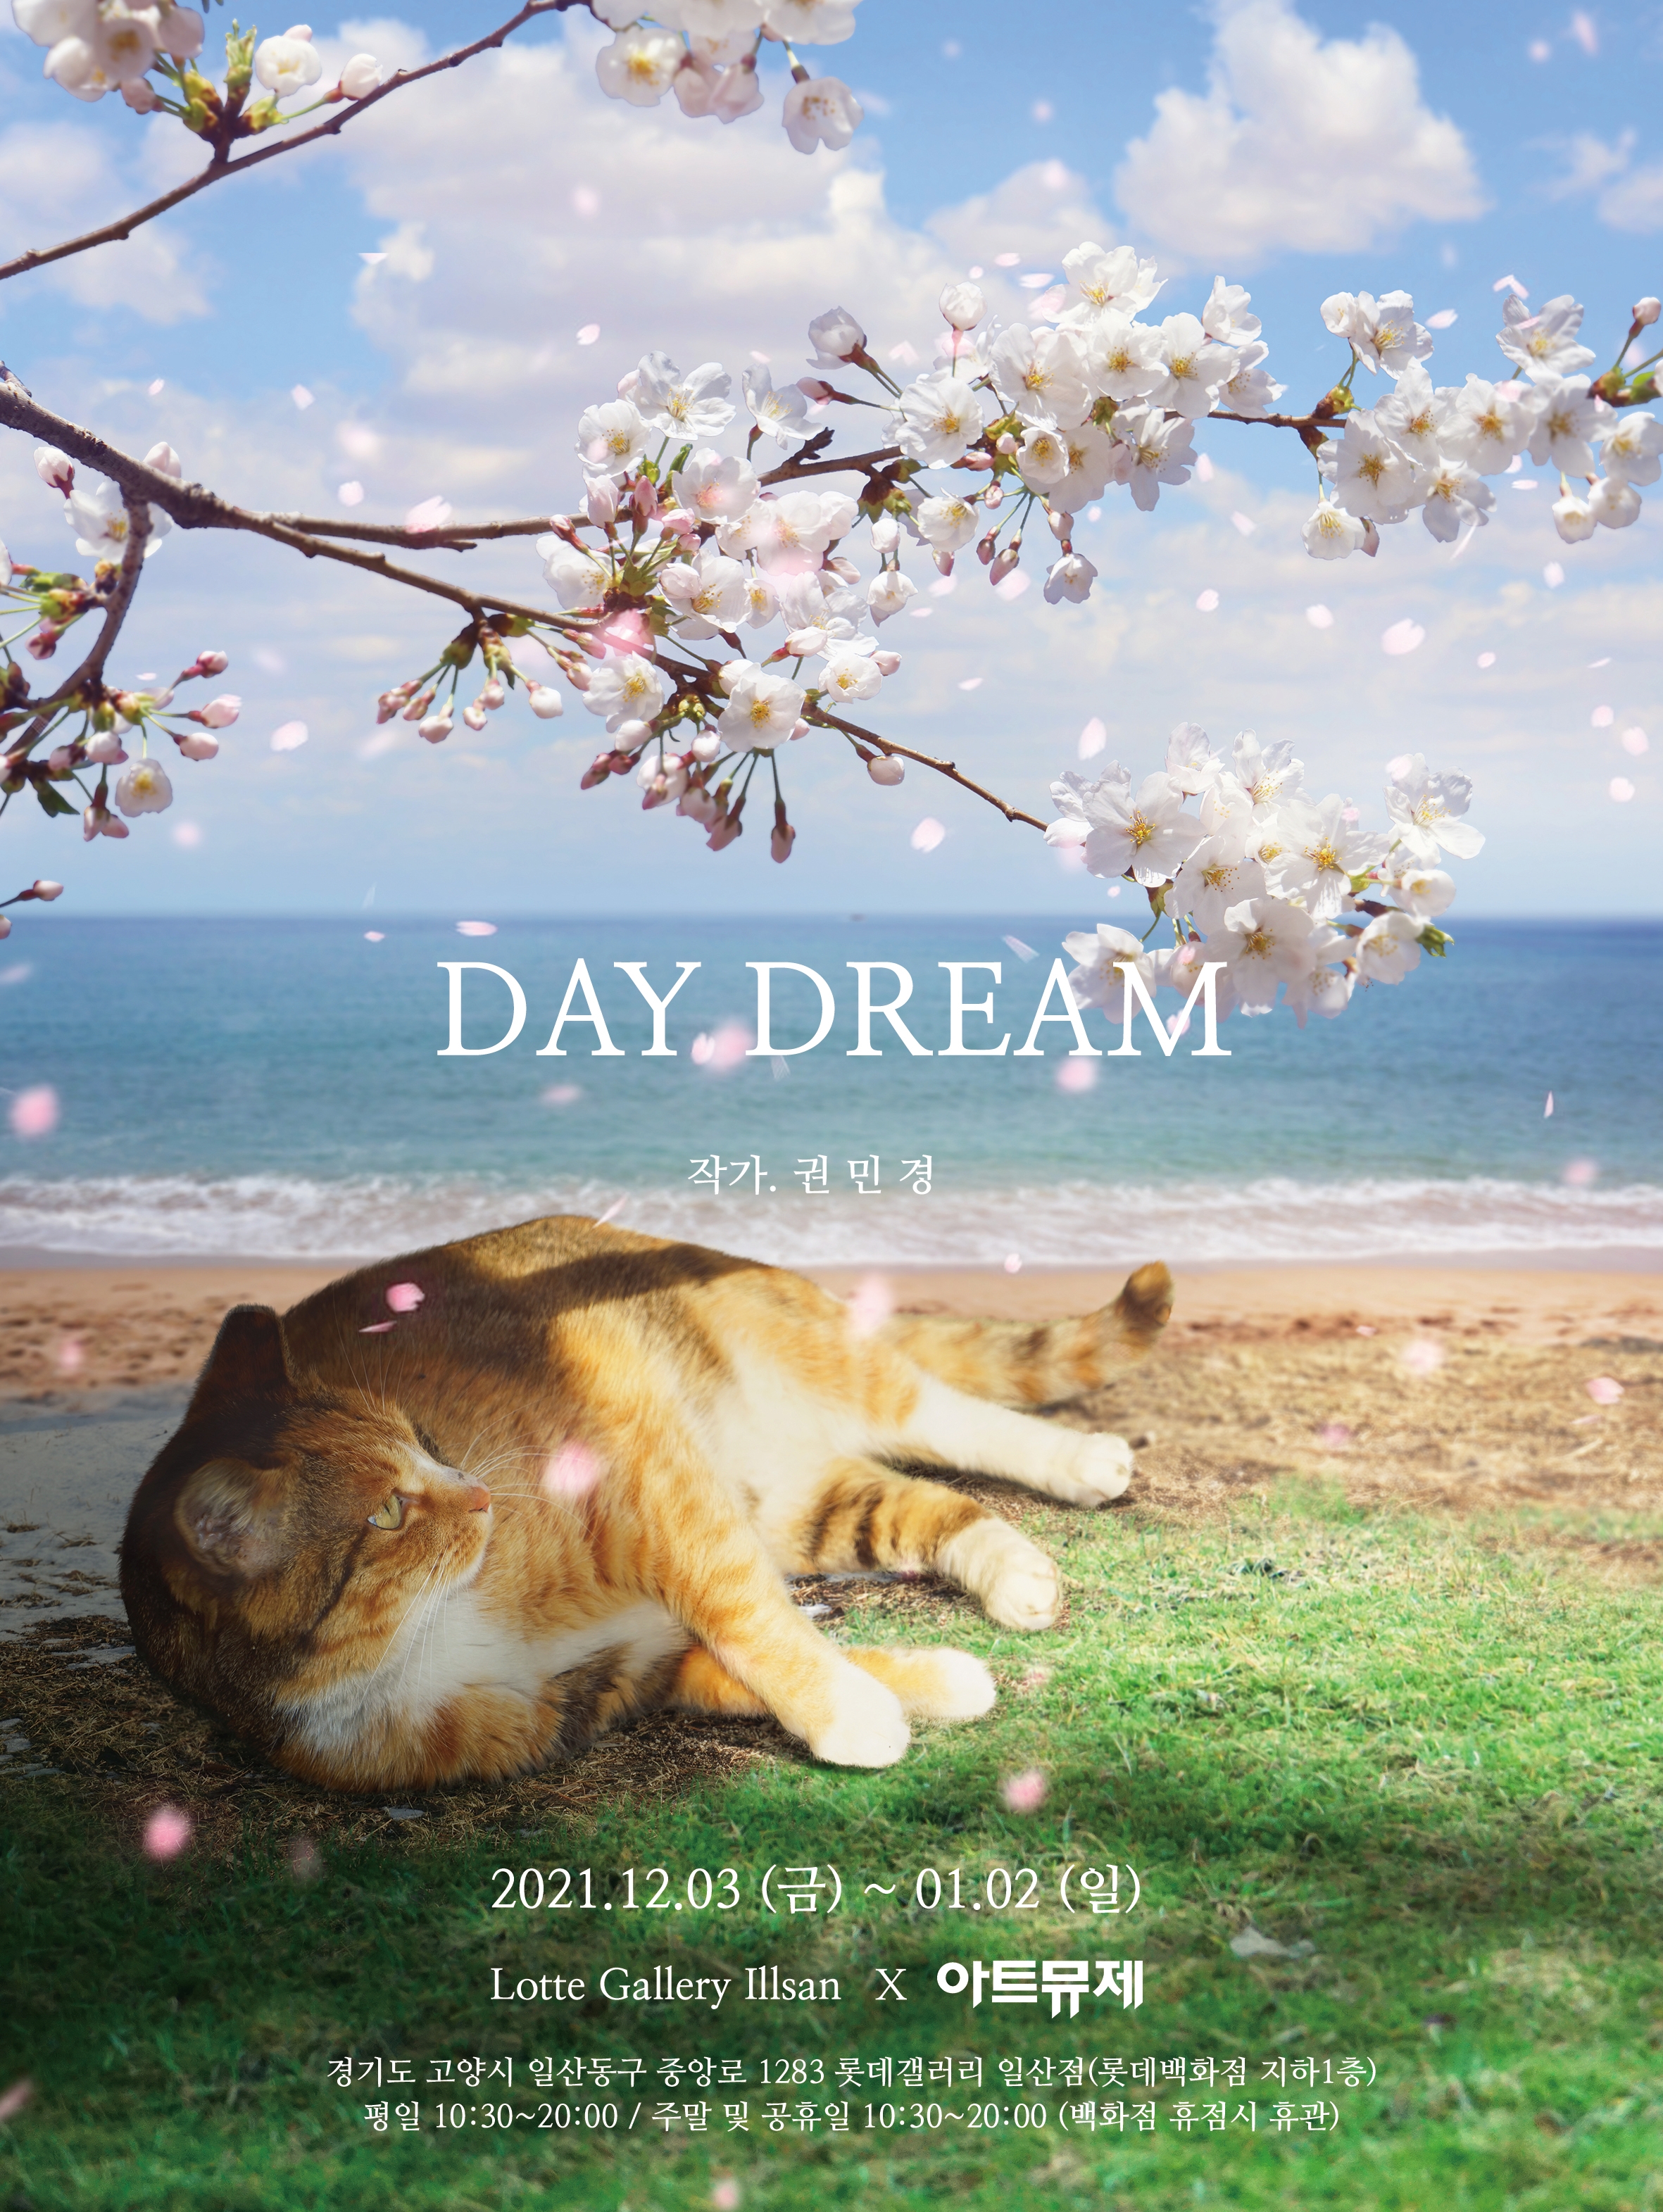 [아트뮤제 전시] DAY DREAM - 권민경 개인展